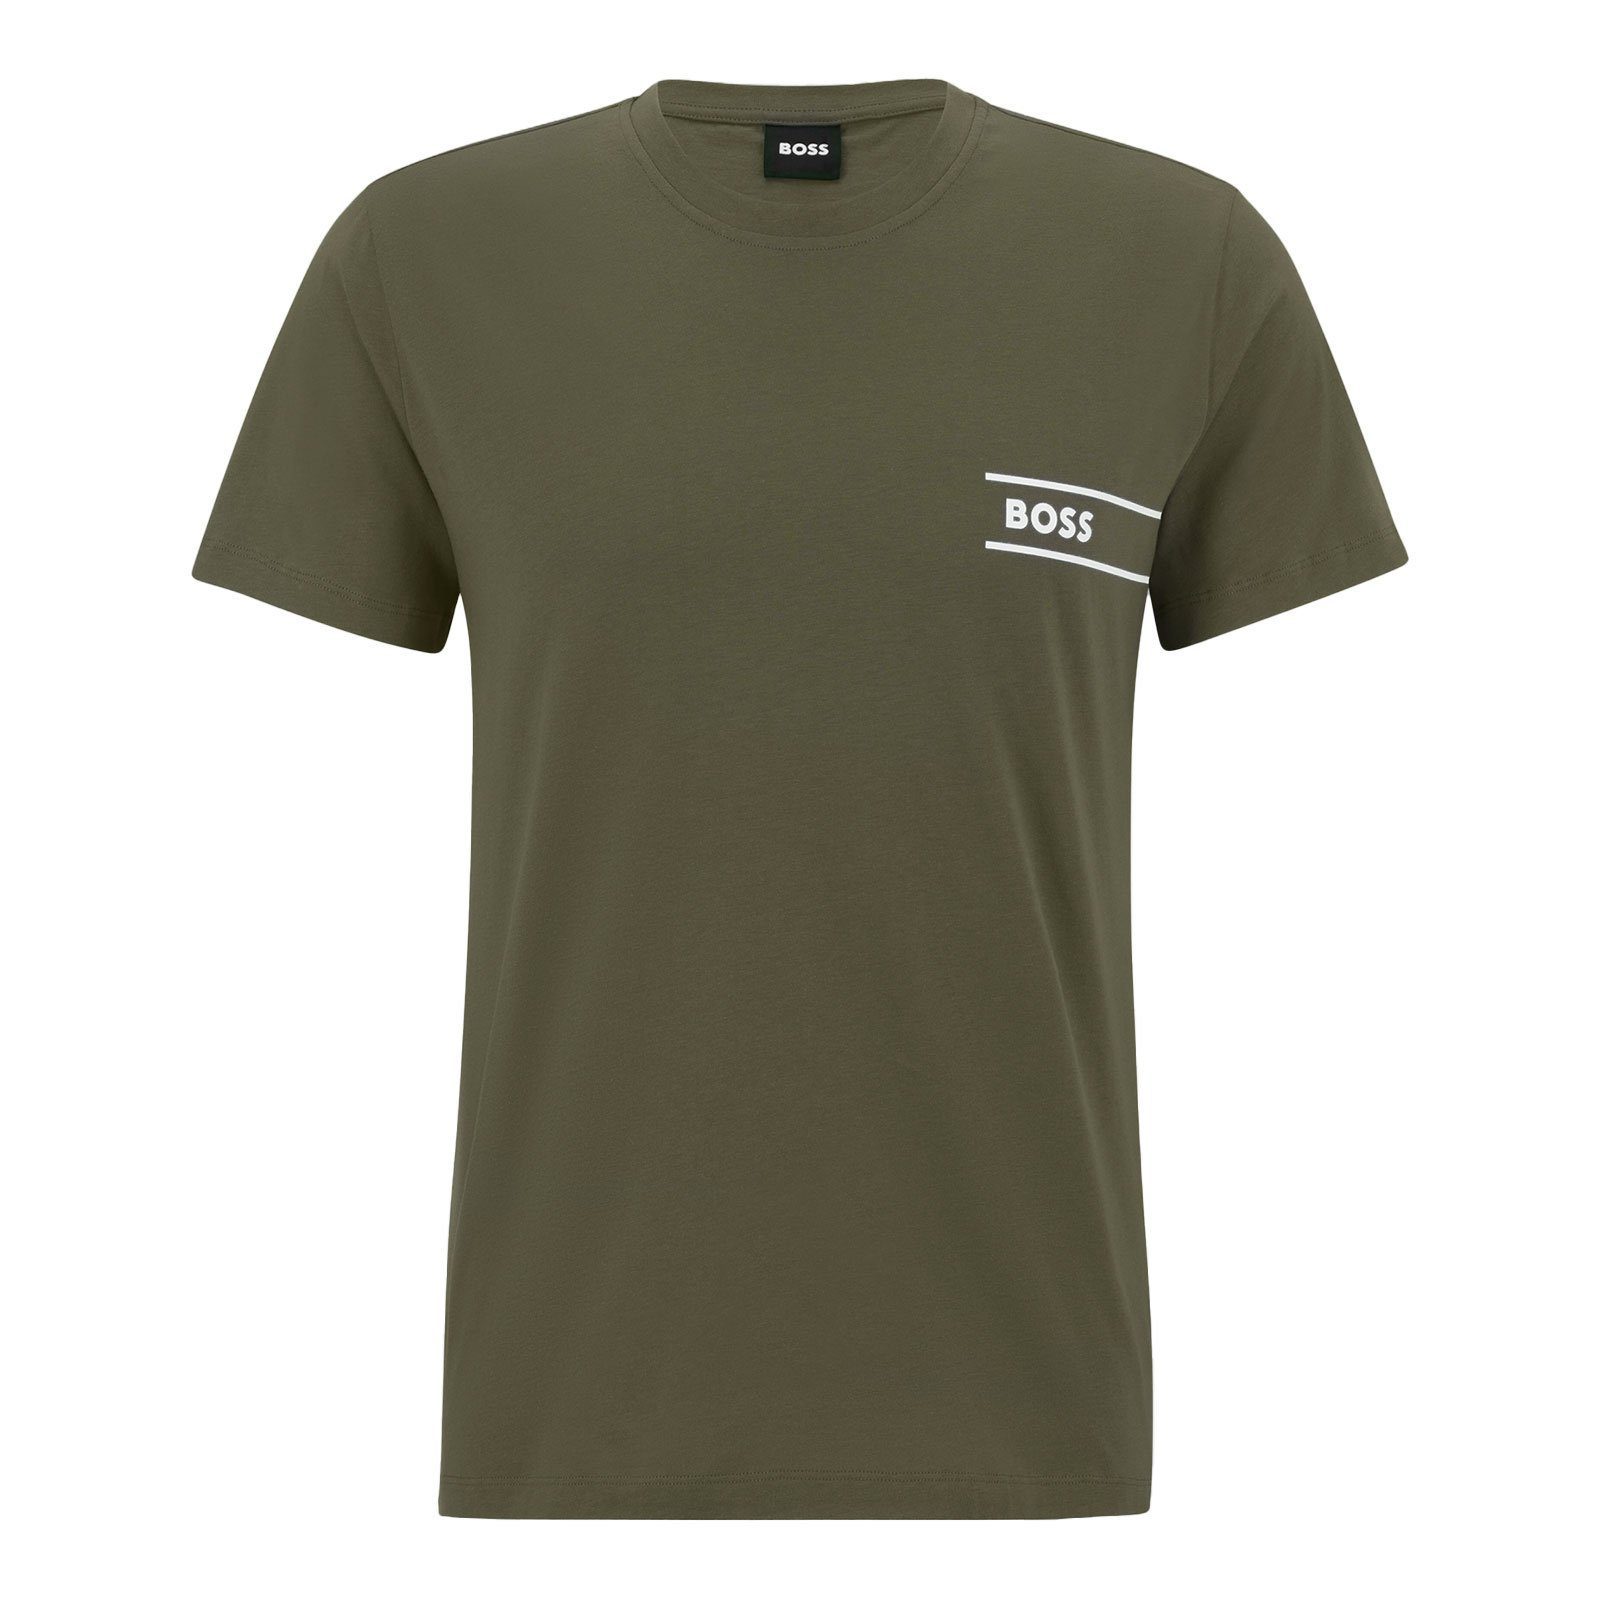 BOSS T-Shirt T-Shirt RN 24 olive 361 Markenprint mit